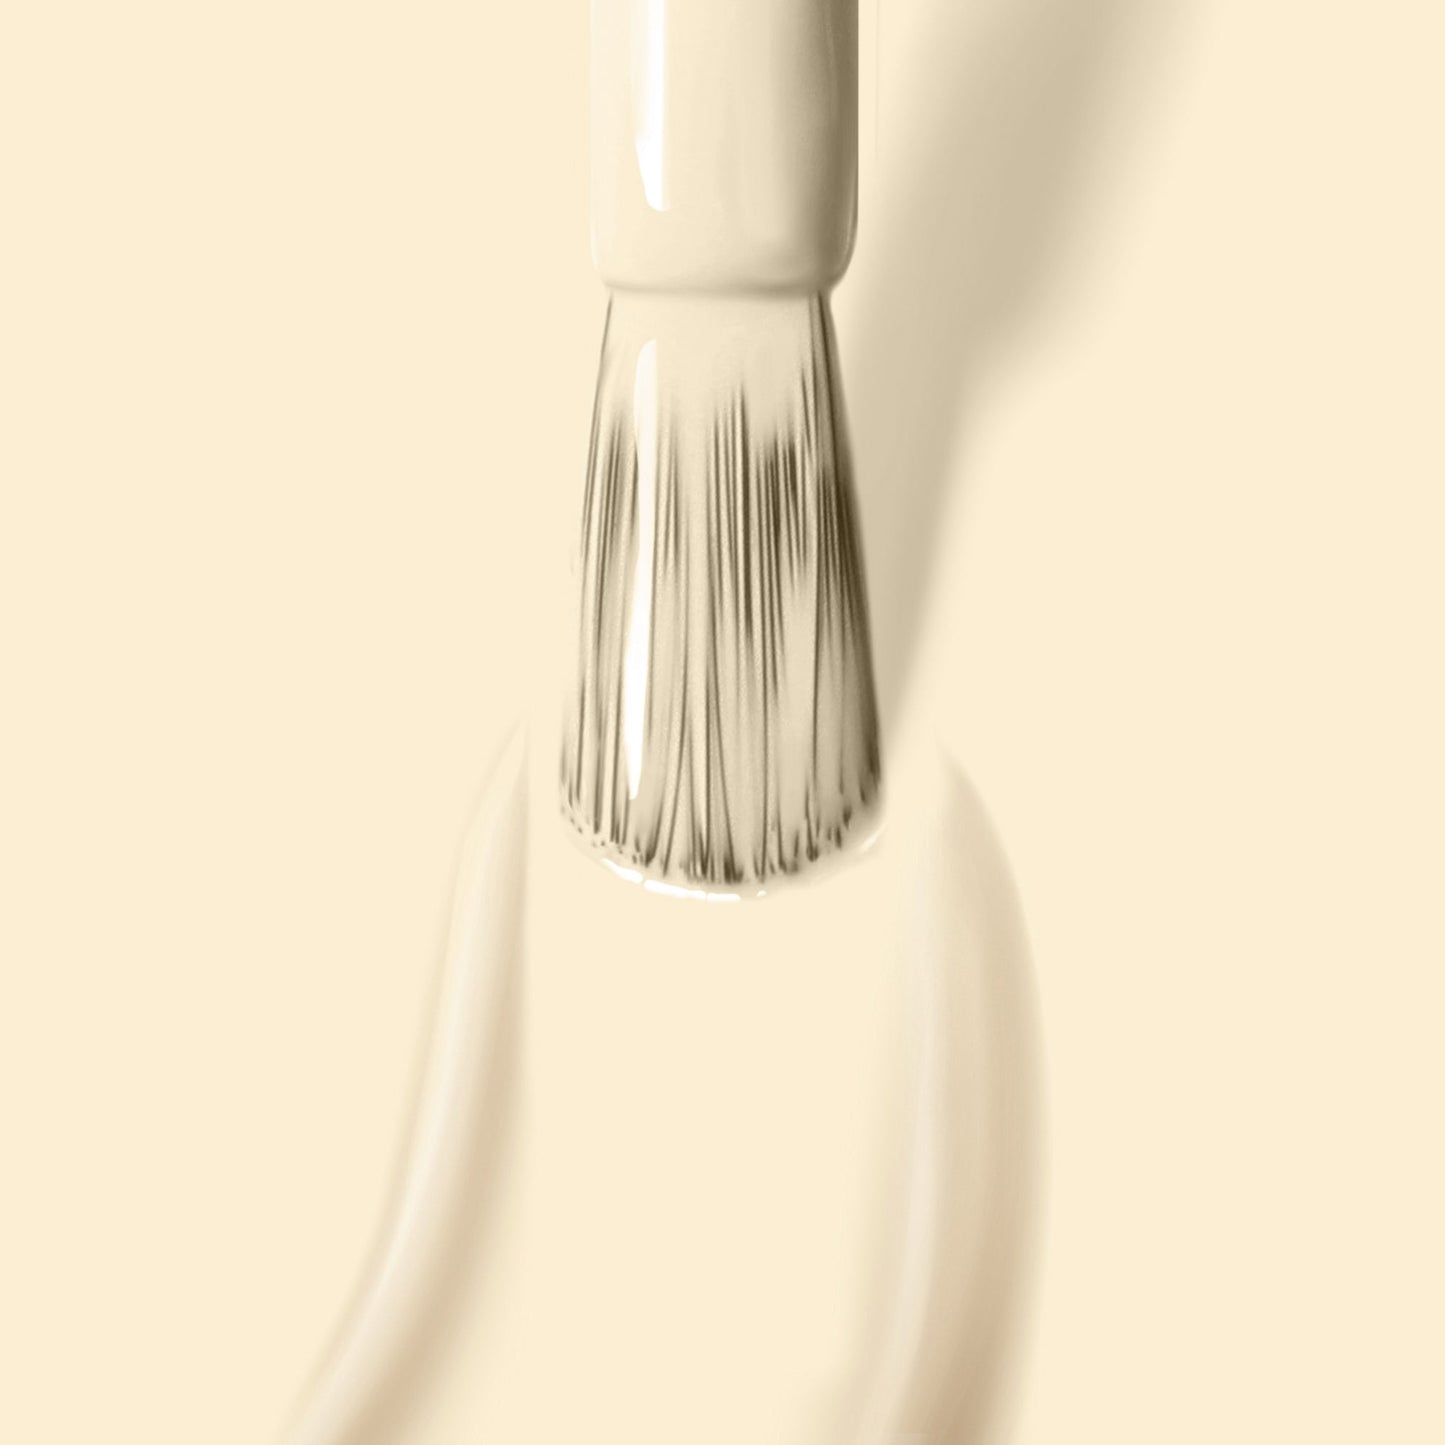 Buttercup Nail Color | Gel-Like Nail Polish